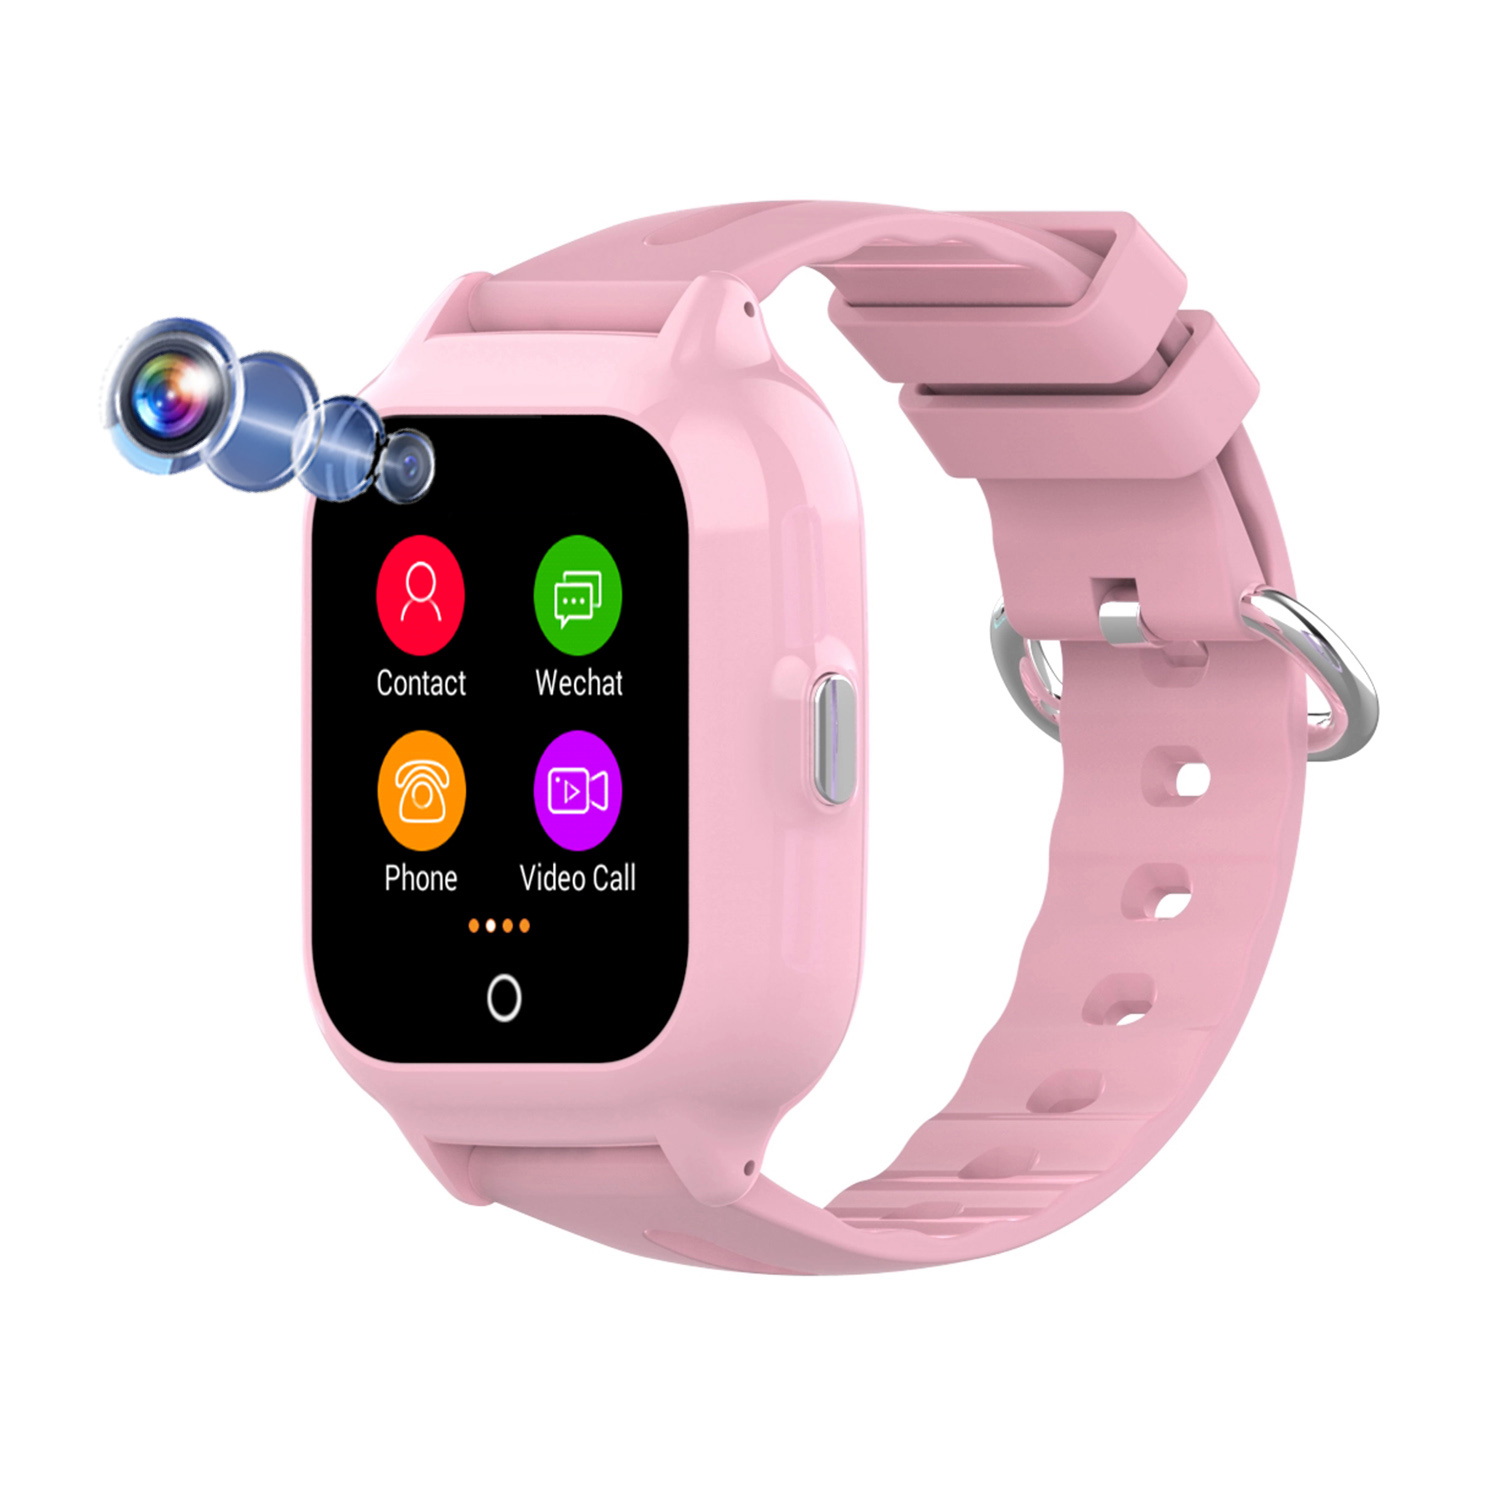 4G Video Call Waterproof Kids Smart Watch Phone GPS Tracker D61